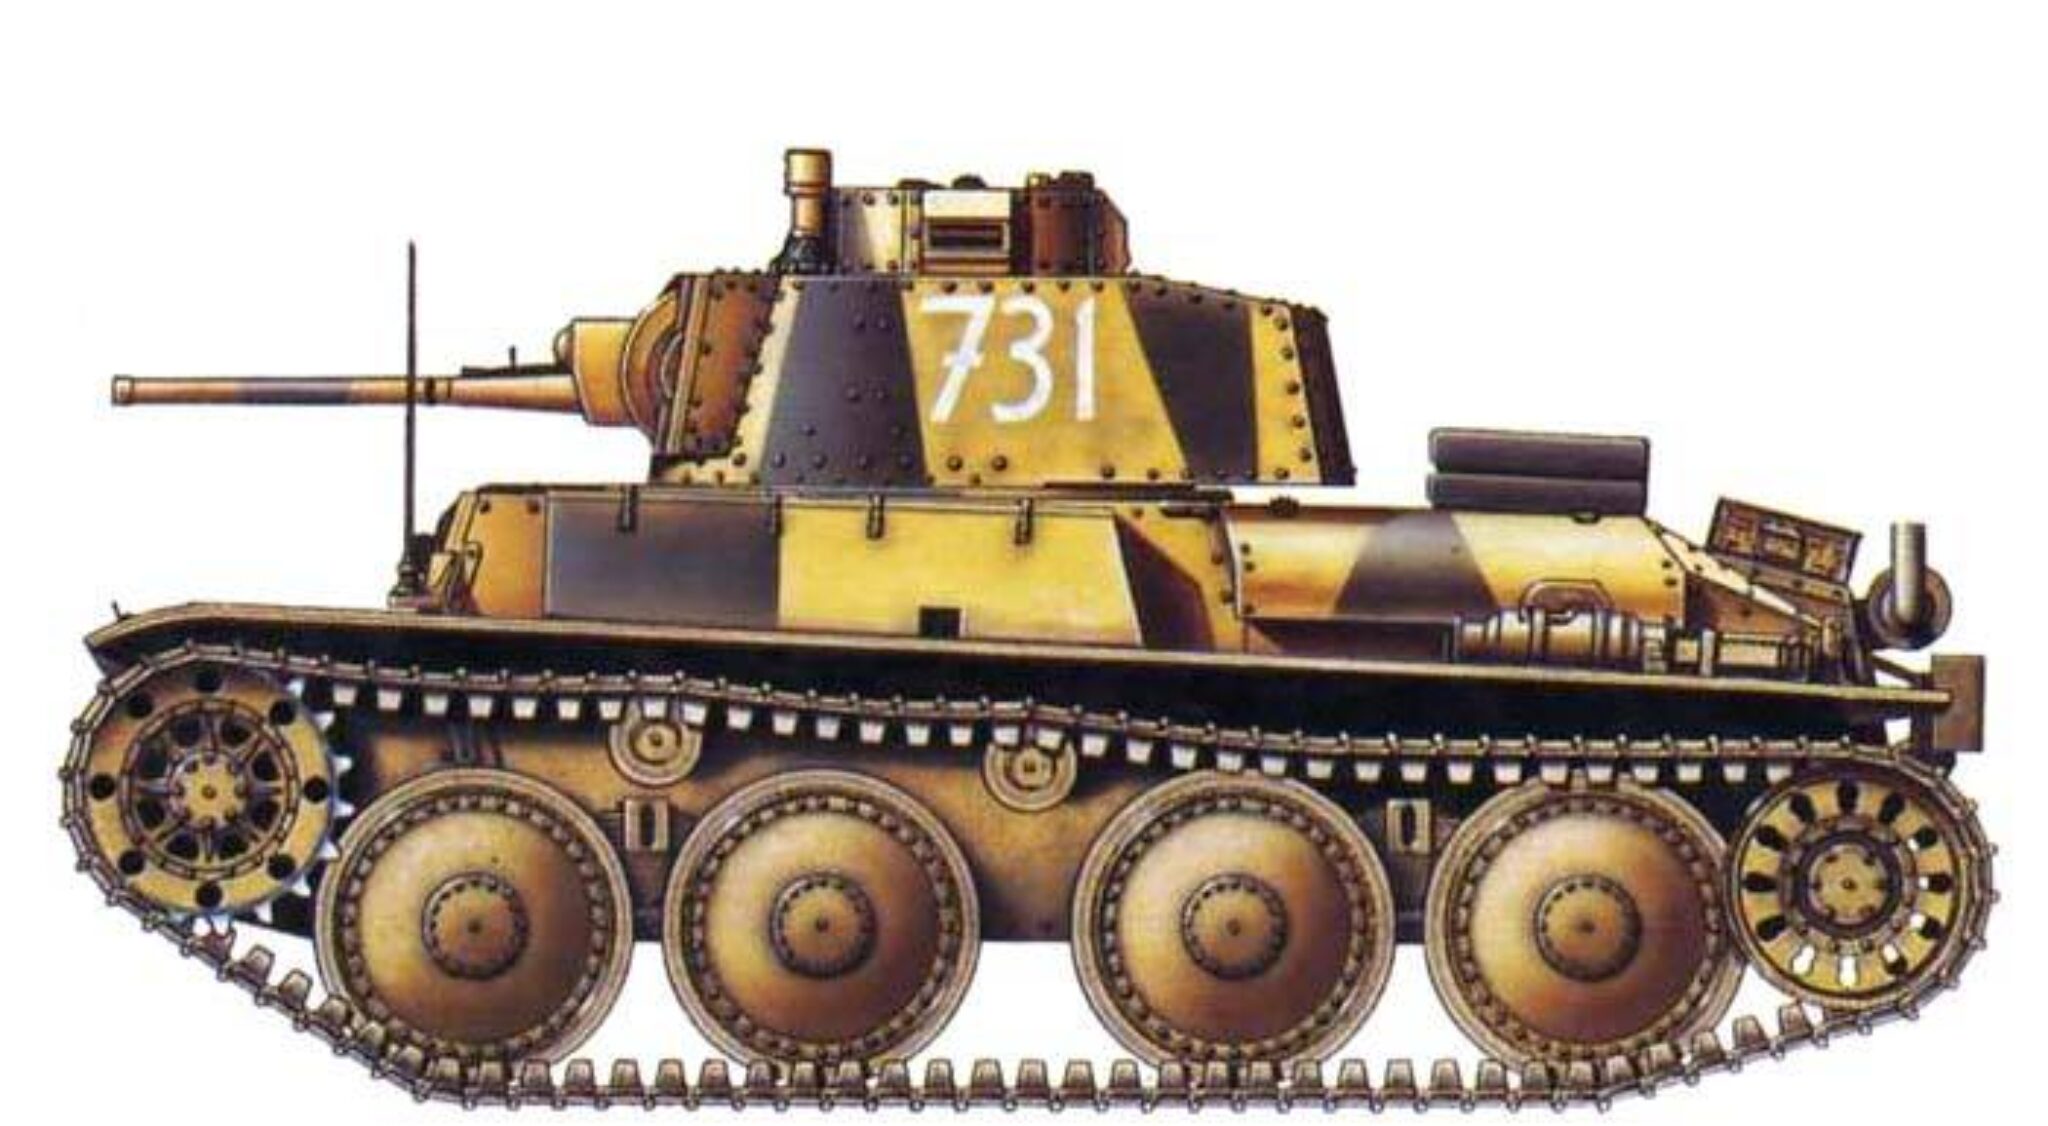 Pz kpfw 38. Танк PZ 38 T. Т38 танк вермахта. Чешский танк 38 t.